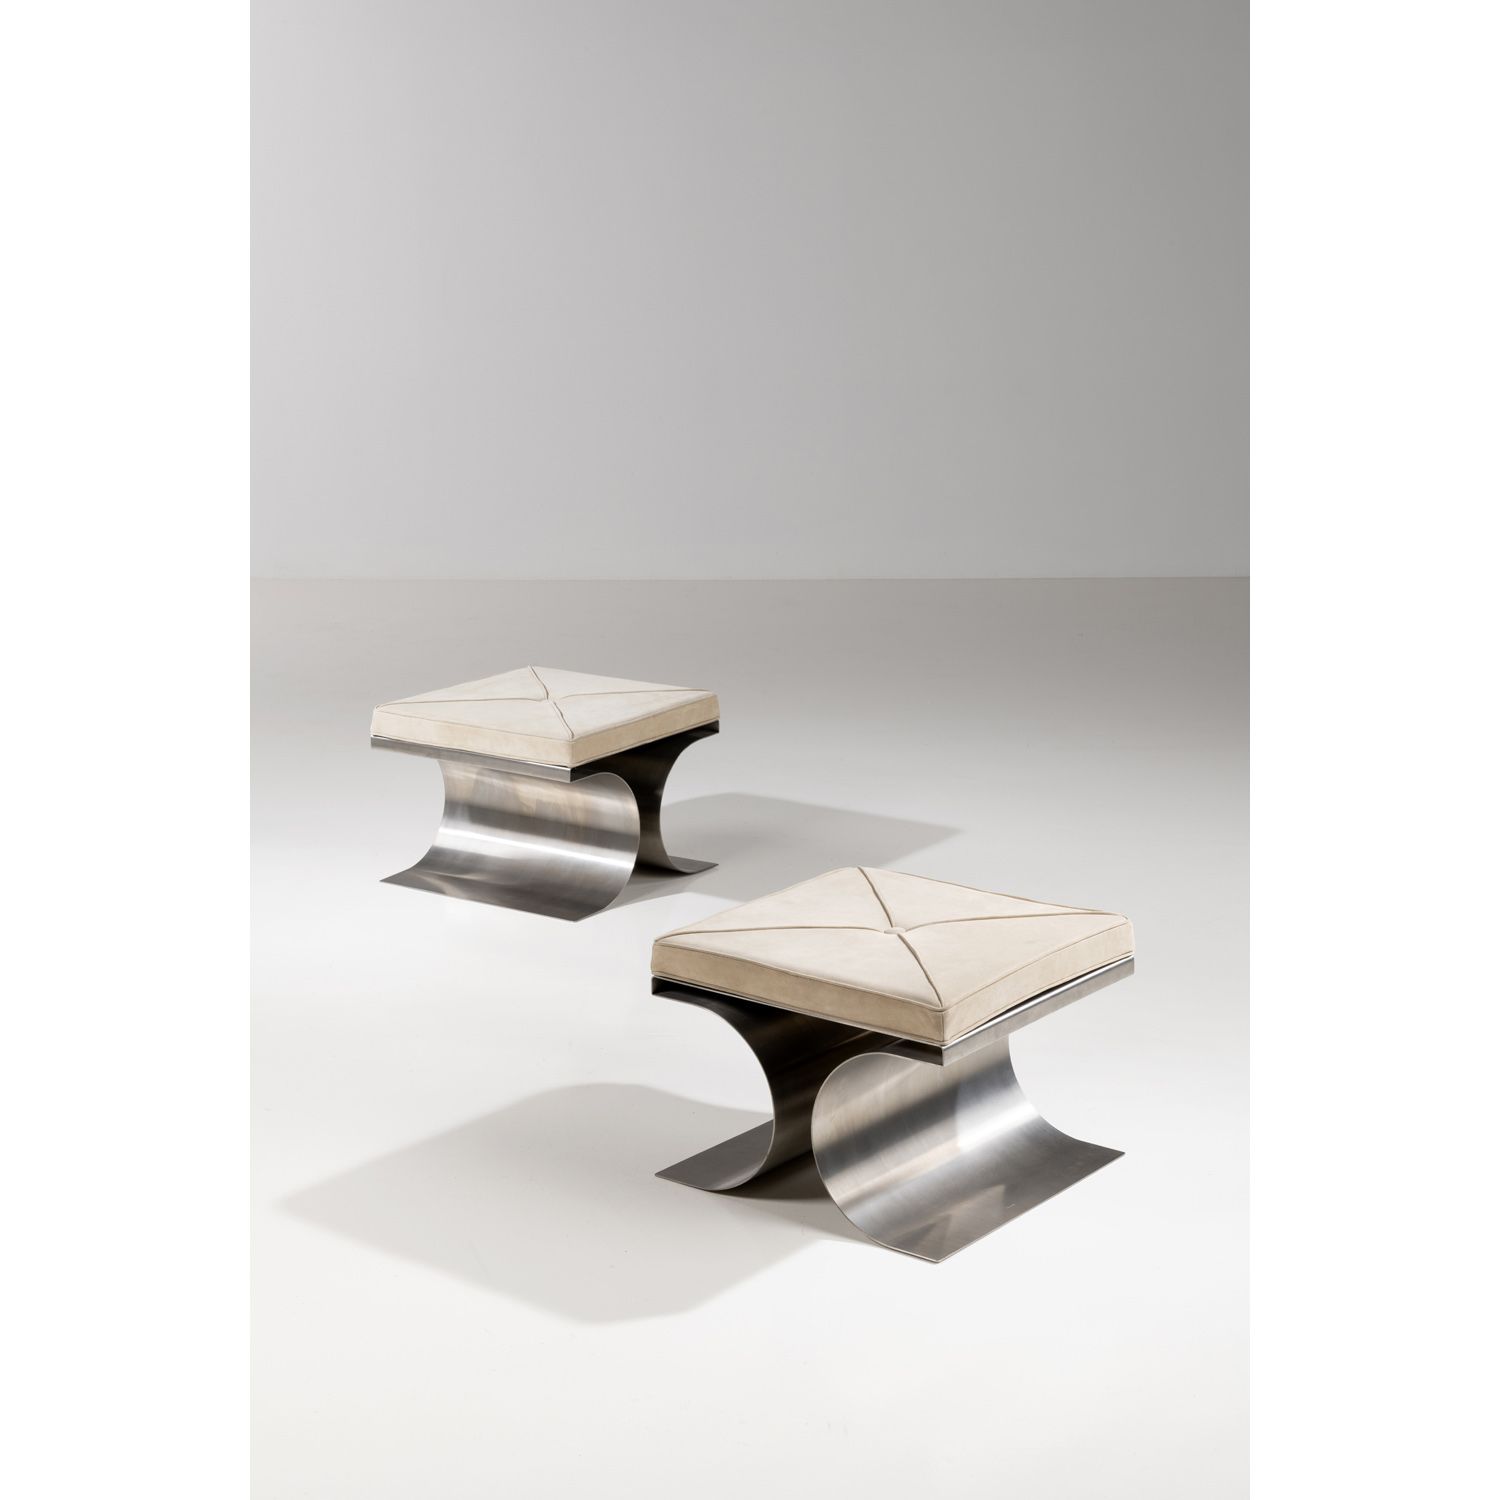 Null 米歇尔-博耶（1935-2011）

X

一对凳子

不锈钢和皮革

鲁夫版

创建于1968年的模型

高37×宽50×深50厘米

可以向买方提&hellip;